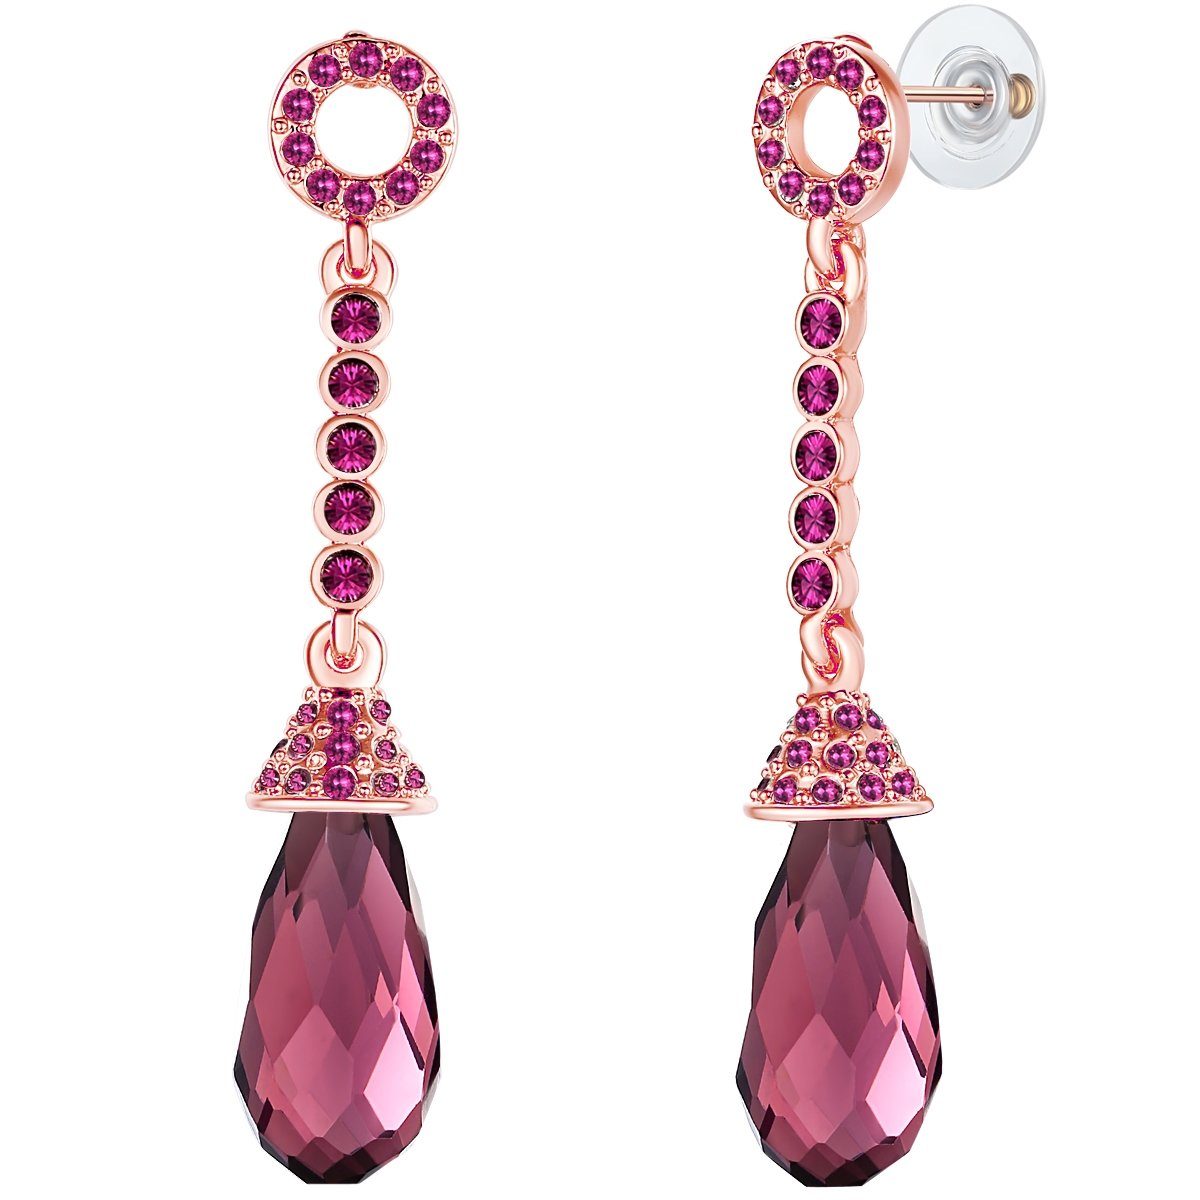 Lulu & Jane Paar Ohrhänger Ohrhänger roségold verziert mit Kristallen von  Swarovski® violett Glas violett